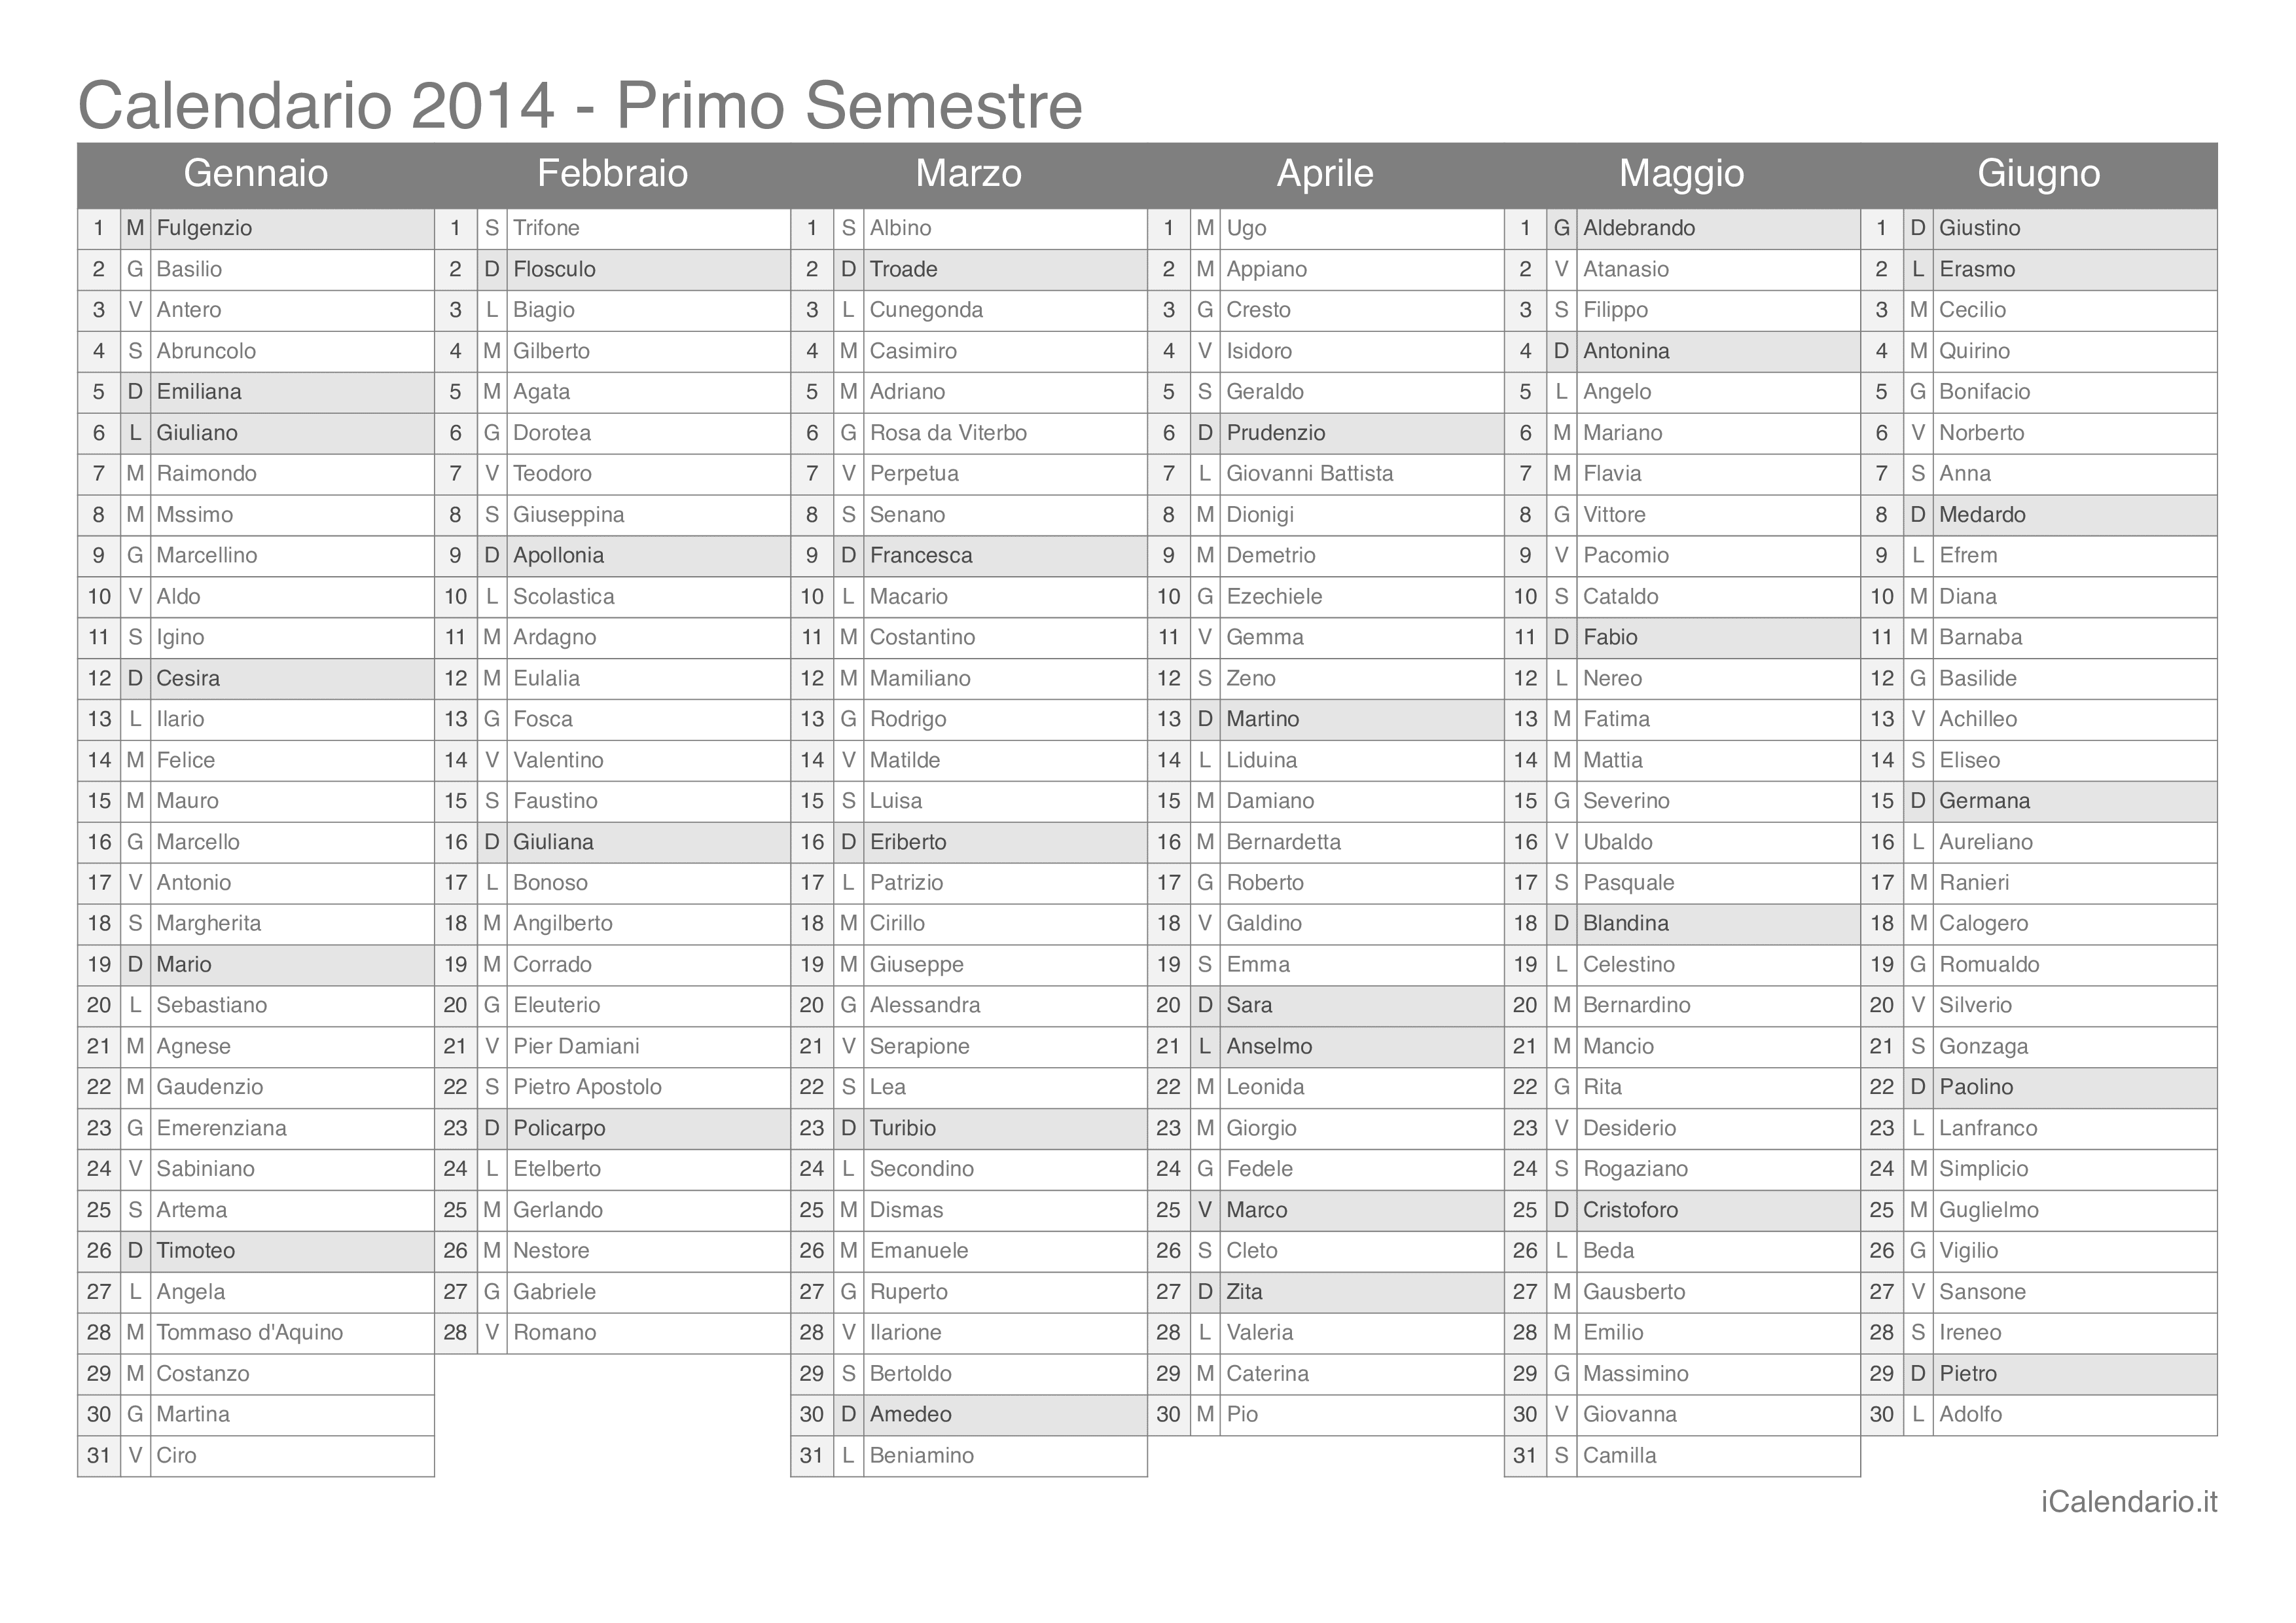 Calendario semestrale 2014 con santi e festivi